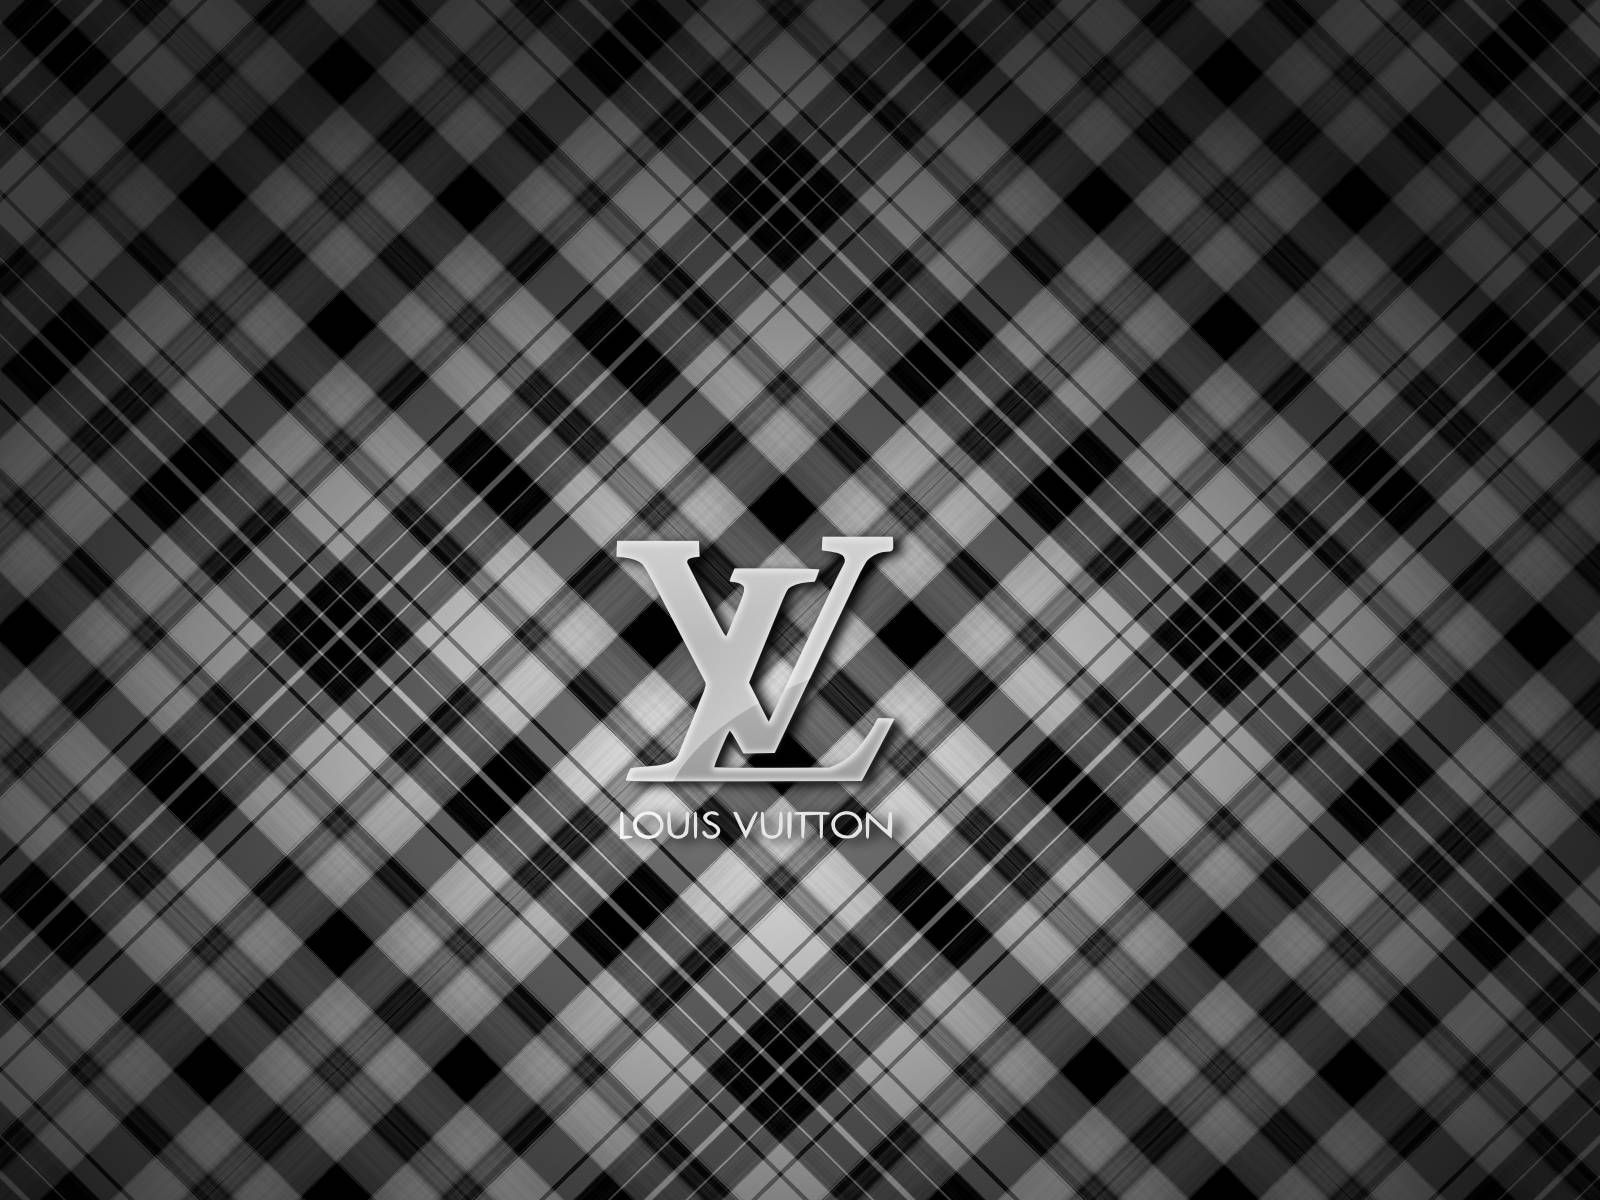 Ảnh nền Louis Vuitton cho máy tính